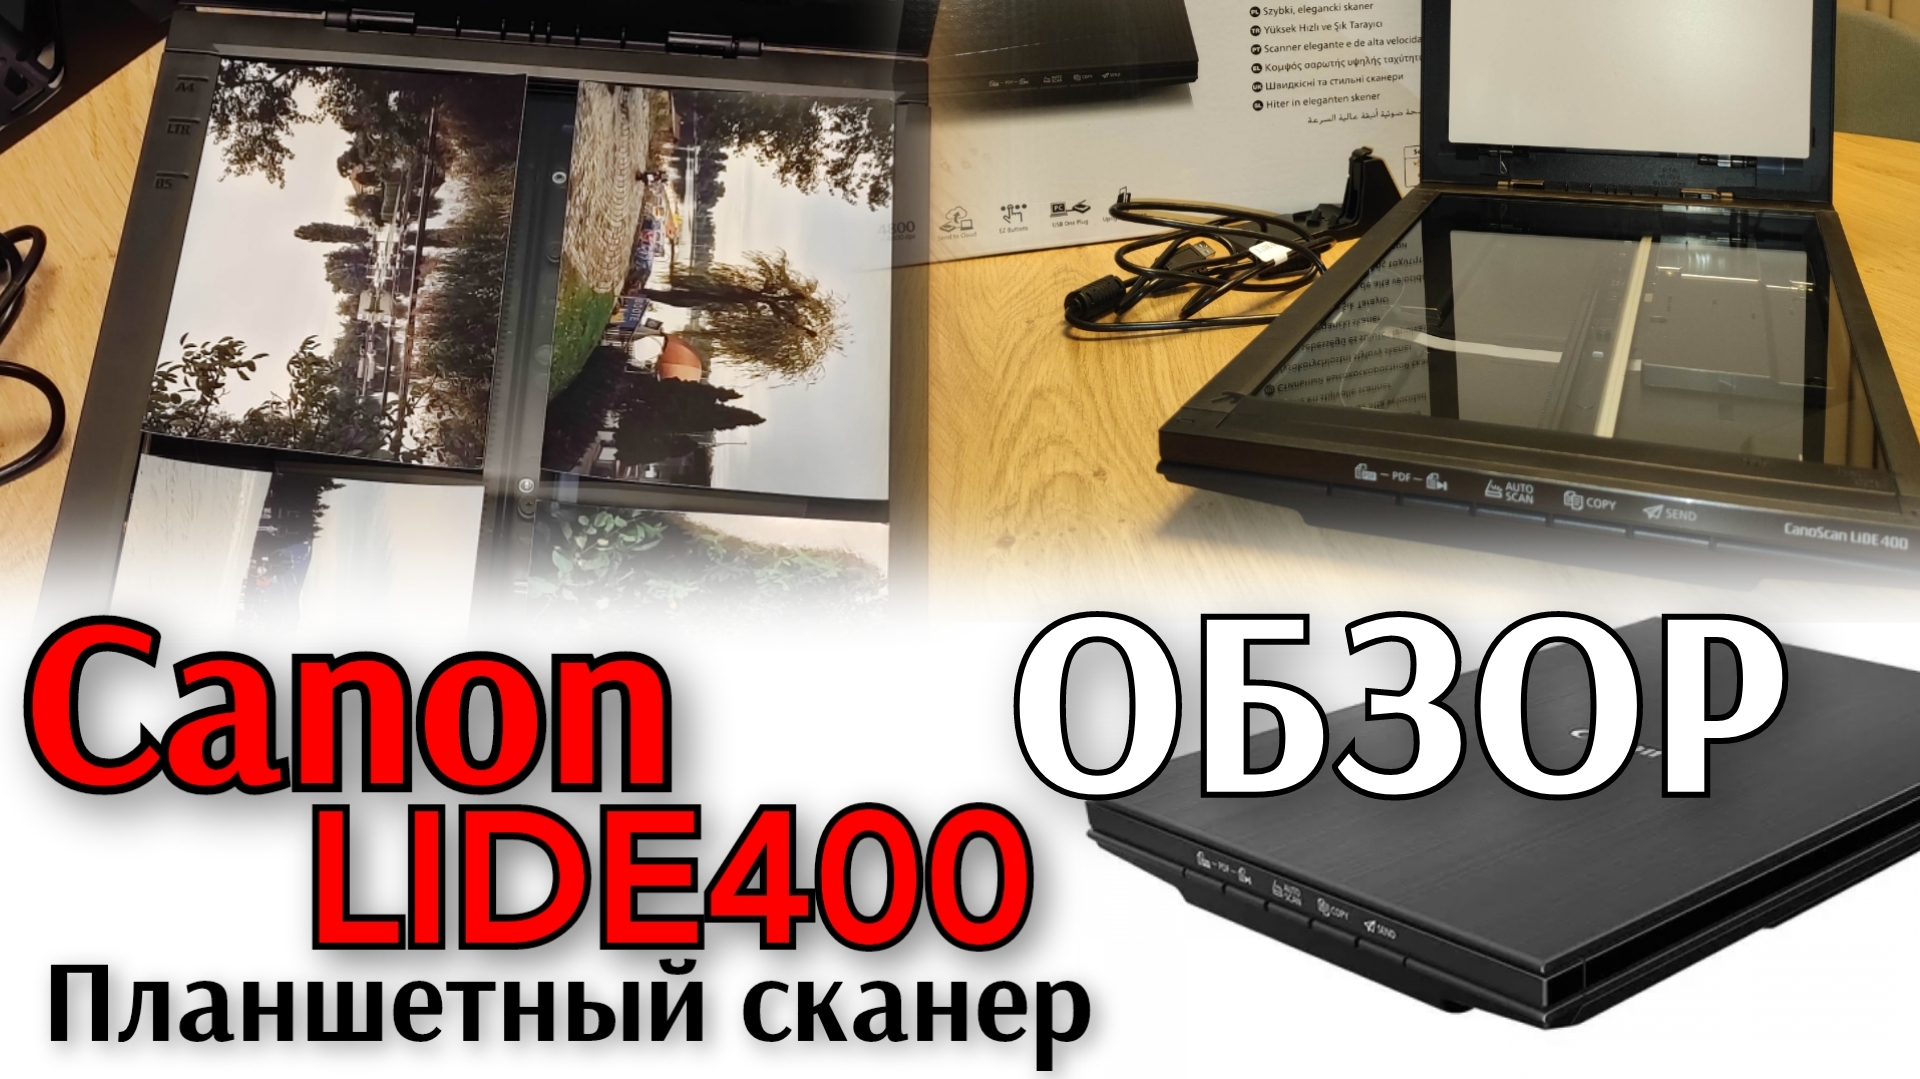 AlexTooRich_Vlog. Отзыв на бюджетный планшетный сканер Canon LIDE400 за 5500  рублей вместо 14390 !